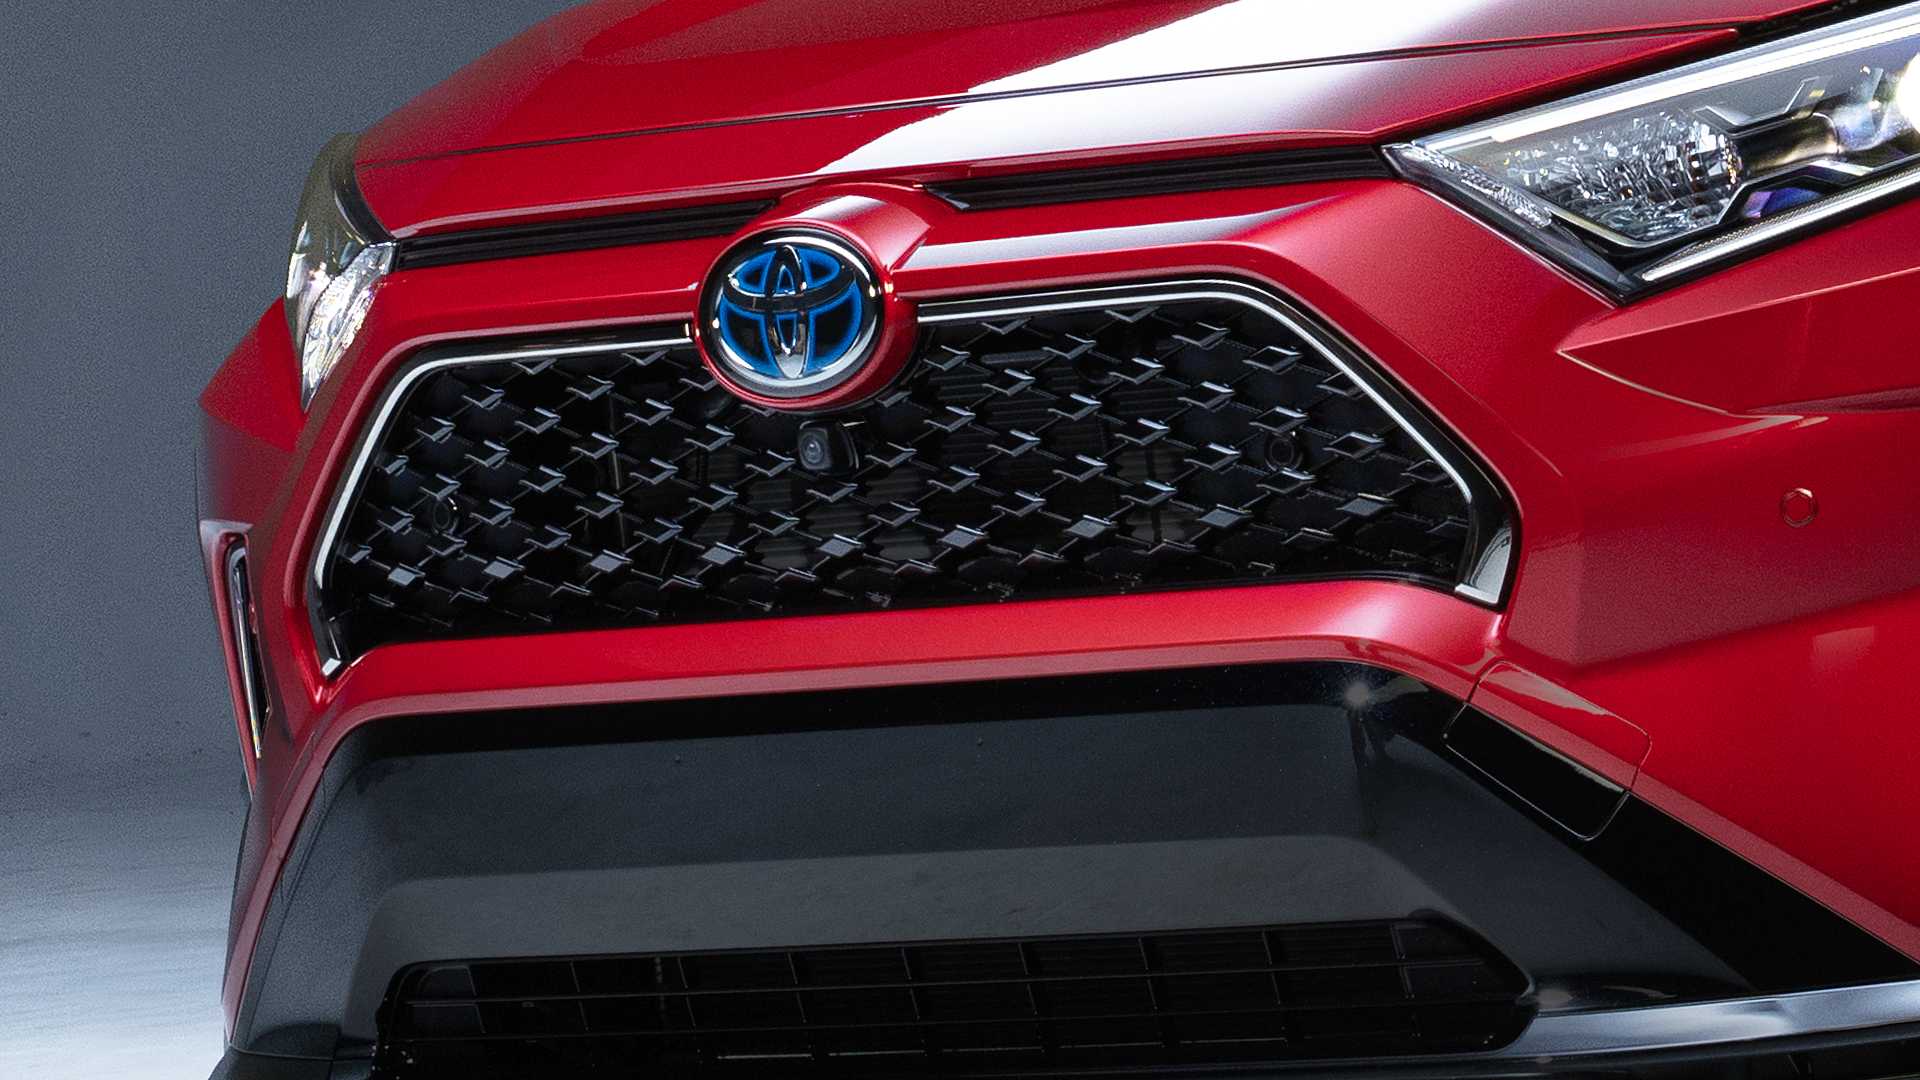 Toyota RAV4, l’ibrido plu-in sarà svelato a novembre a Los Angeles